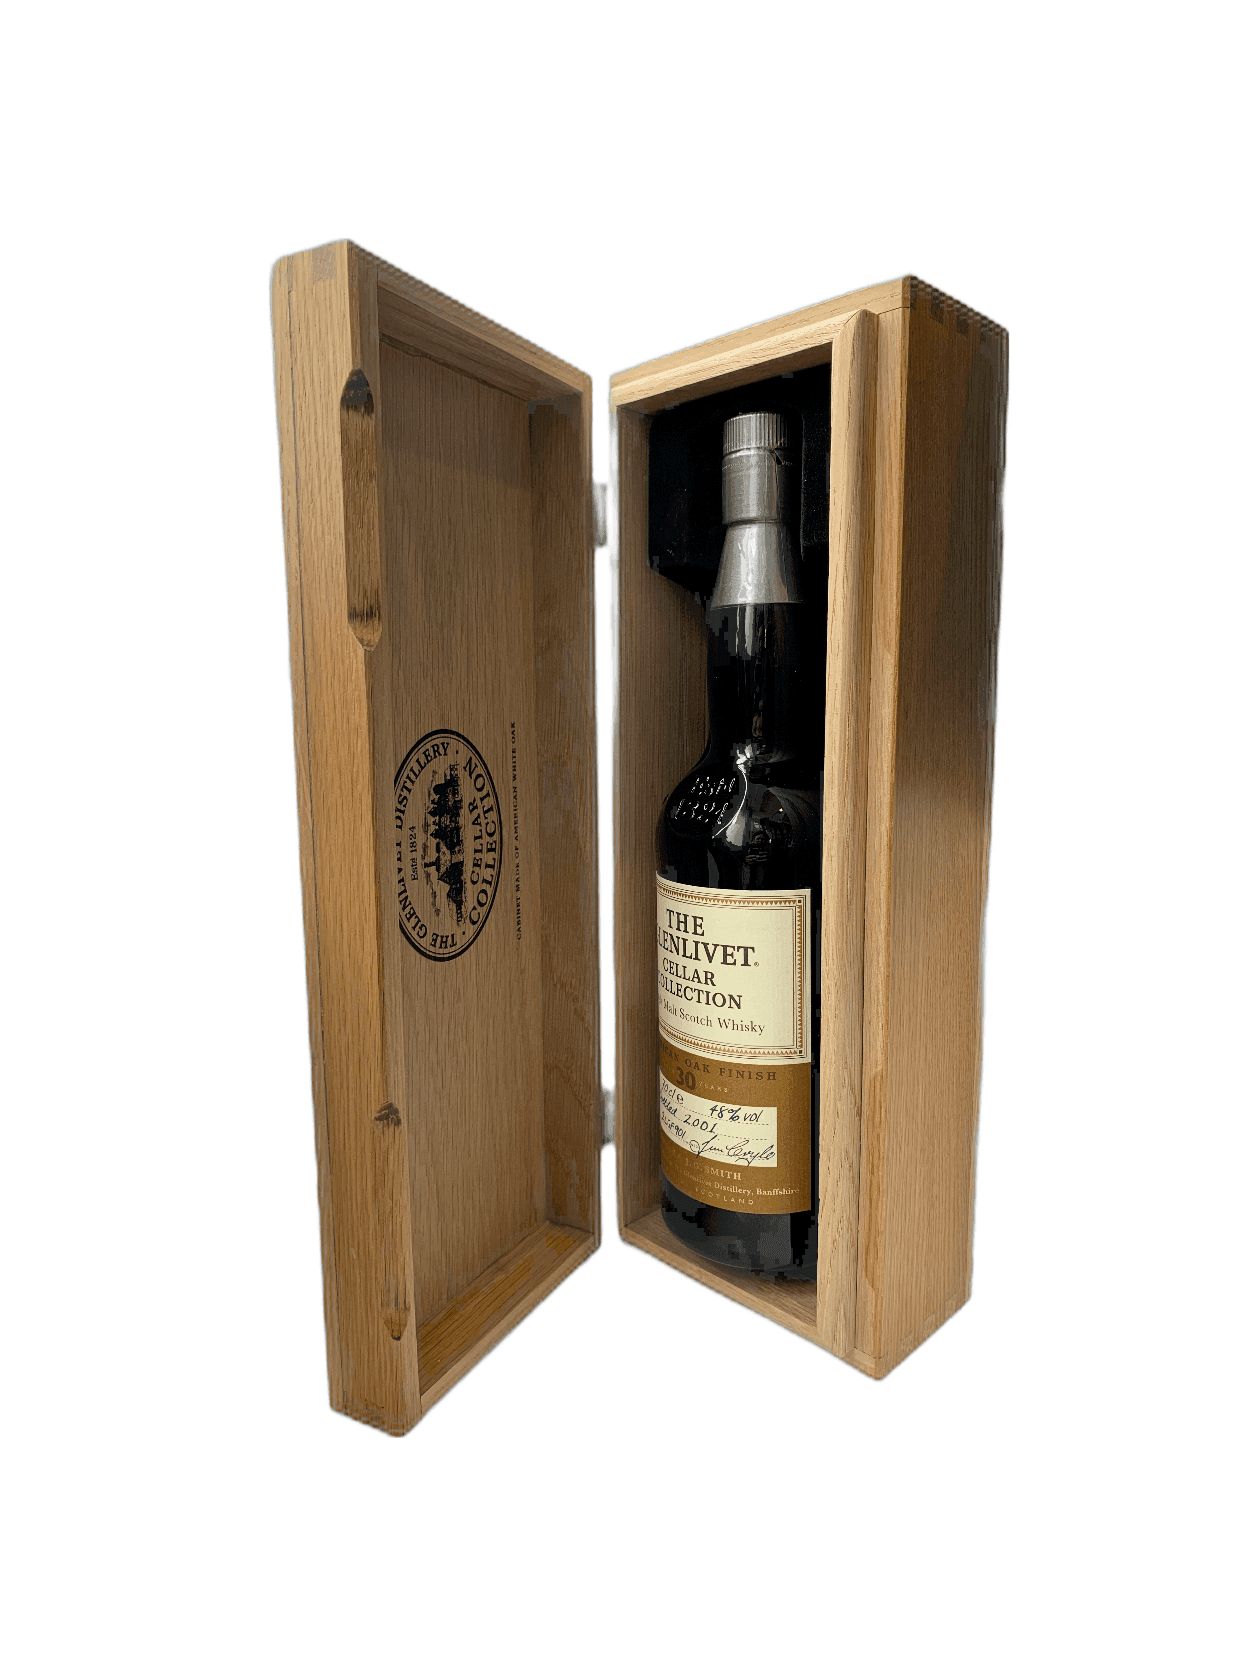 Glenlivet 30, Cellar collection 2001, wood box, 70cl, vintage Whisky